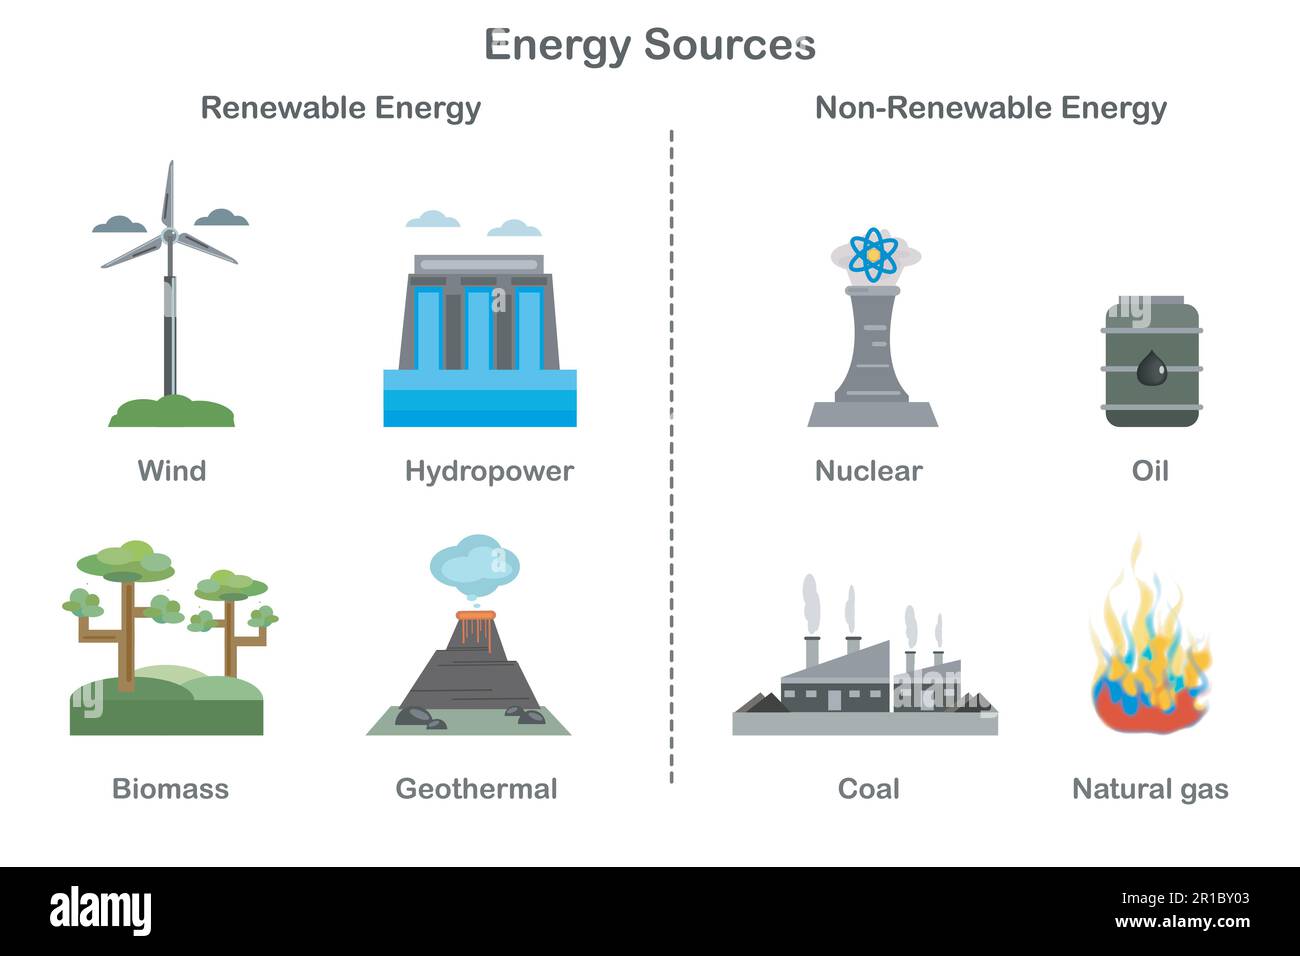 Diagramm zu erneuerbaren und nicht erneuerbaren Energiequellen. Vektordarstellung der Energiequellen. Erzeugung erneuerbarer Energie im Vergleich zu nicht erneuerbarer Energie. Carbon-BA Stock Vektor